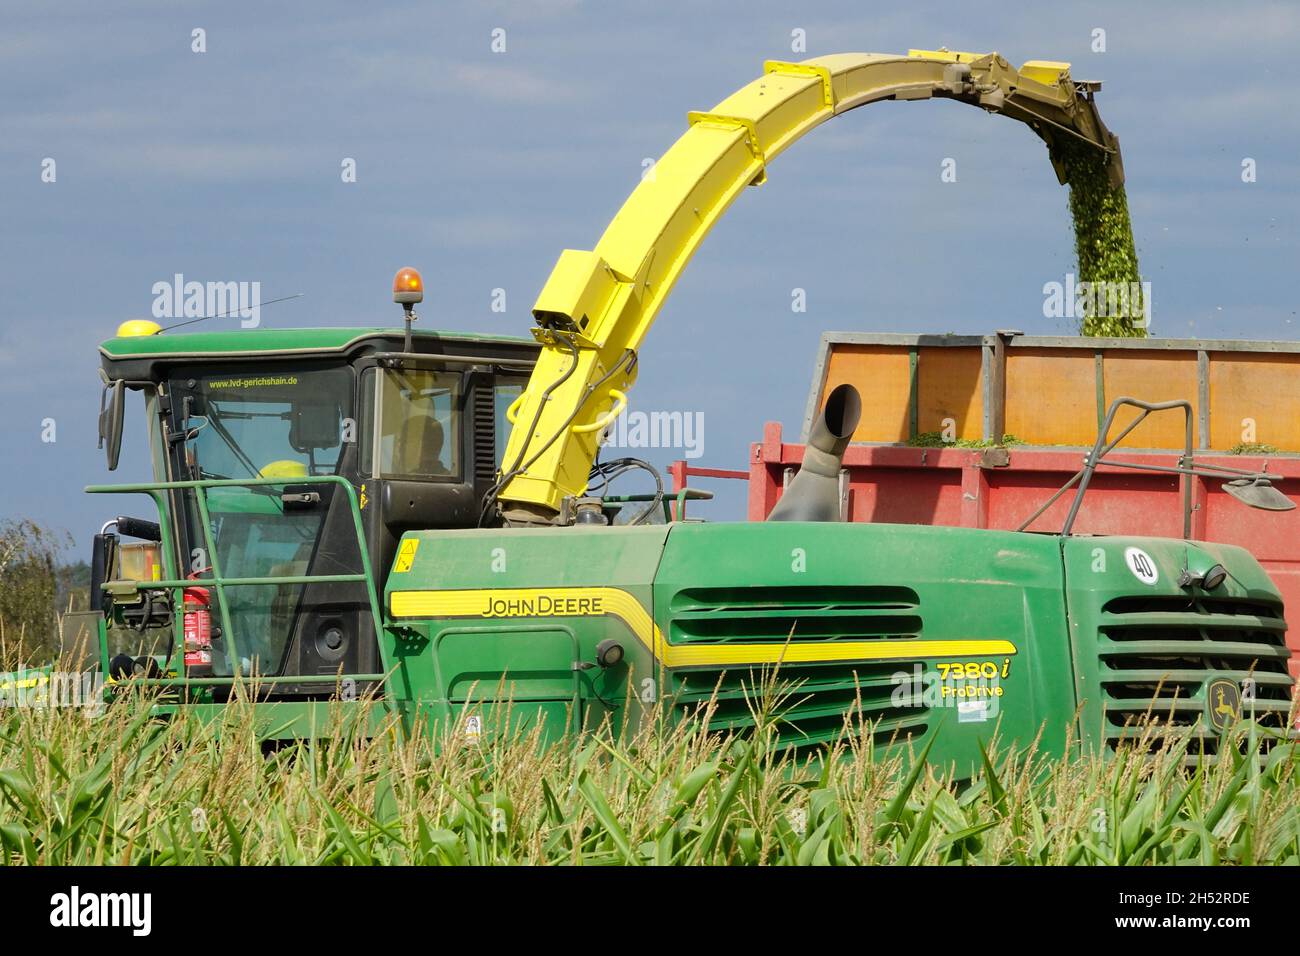 John Deere Combine harvester Stock Photo